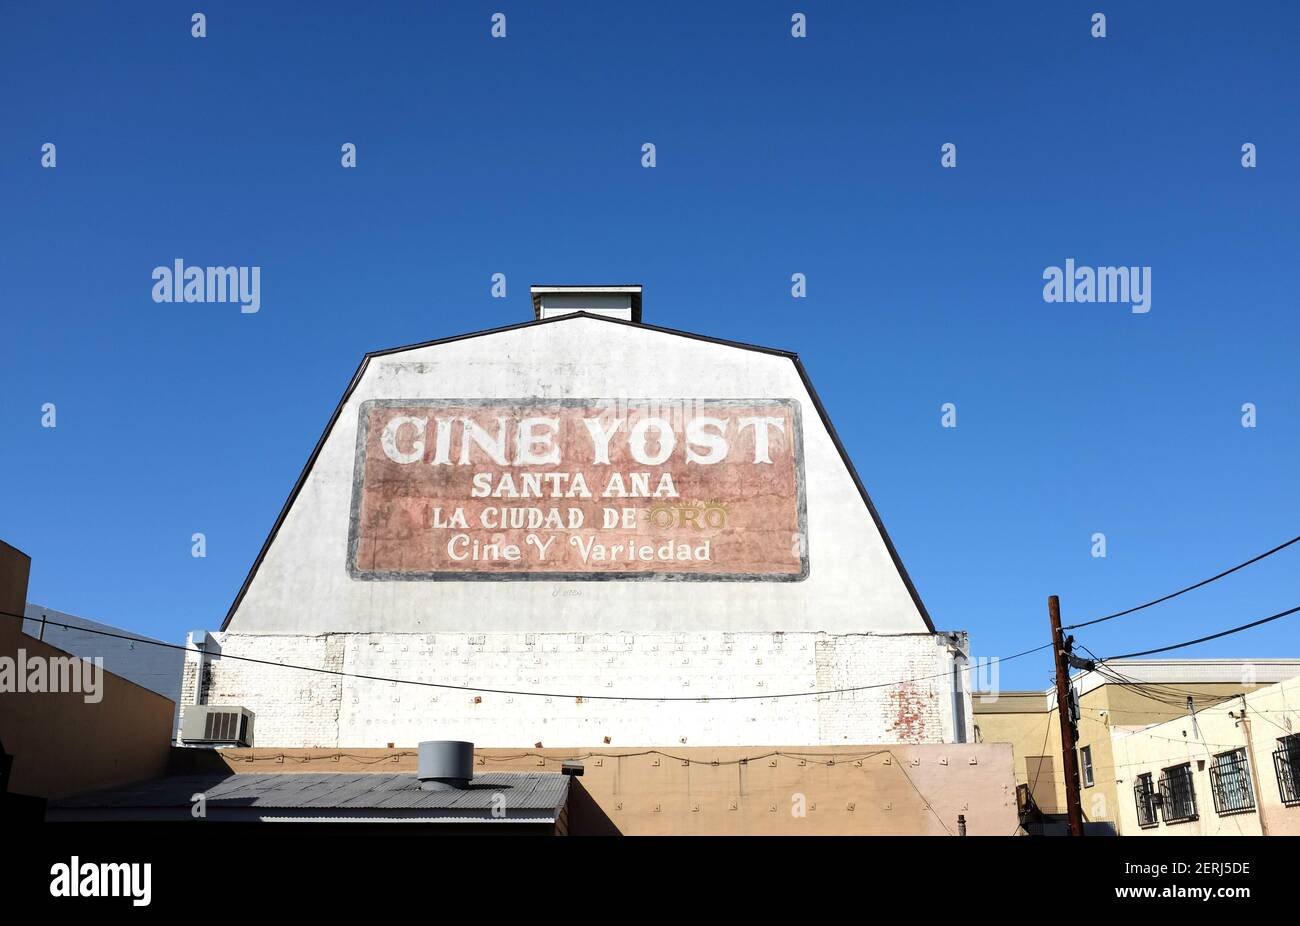 SANTA ANA, KALIFORNIEN - 25. FEB 2021: Schild am Cine Yost Gebäude, dem ältesten Theater in Orange County. Übersetzung: Stadt des Goldes - Filme und Vari Stockfoto